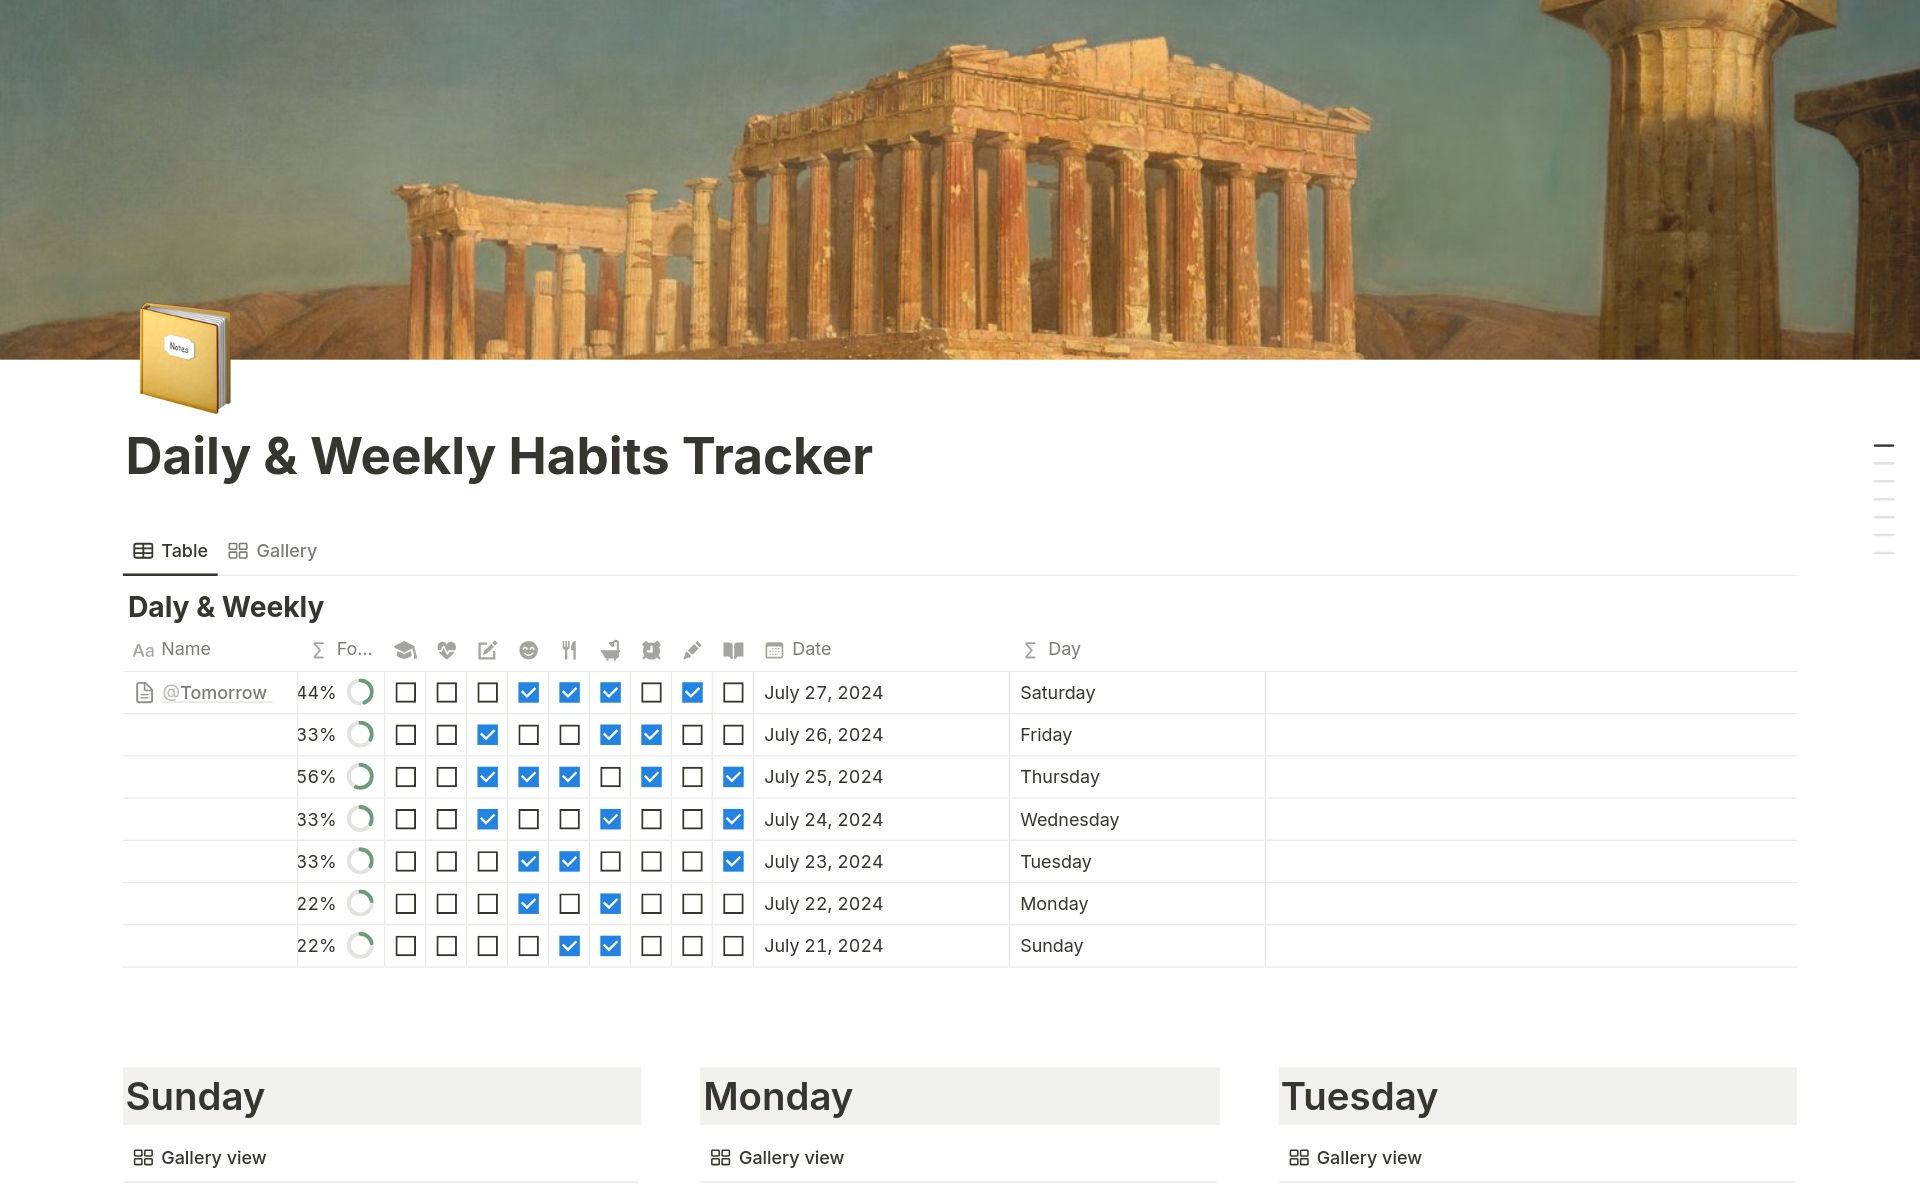 Daily & Weekly Habits Tracker님의 템플릿 미리보기